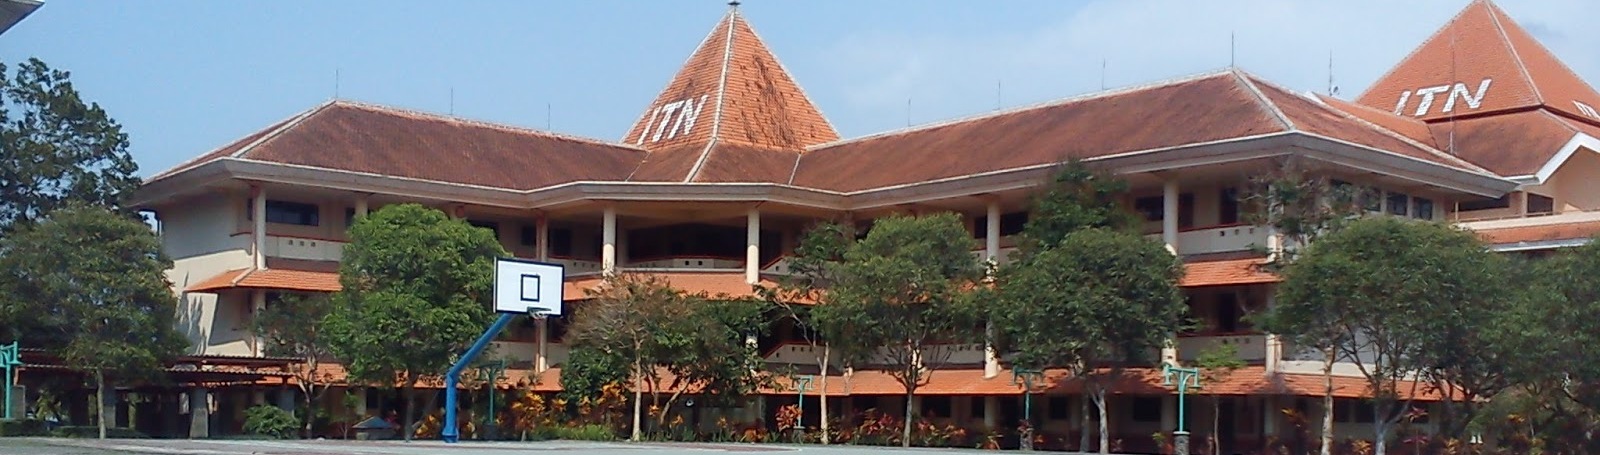 Institut Teknologi Nasional (ITN) Malang resmi mendapat ISO 9001:2008